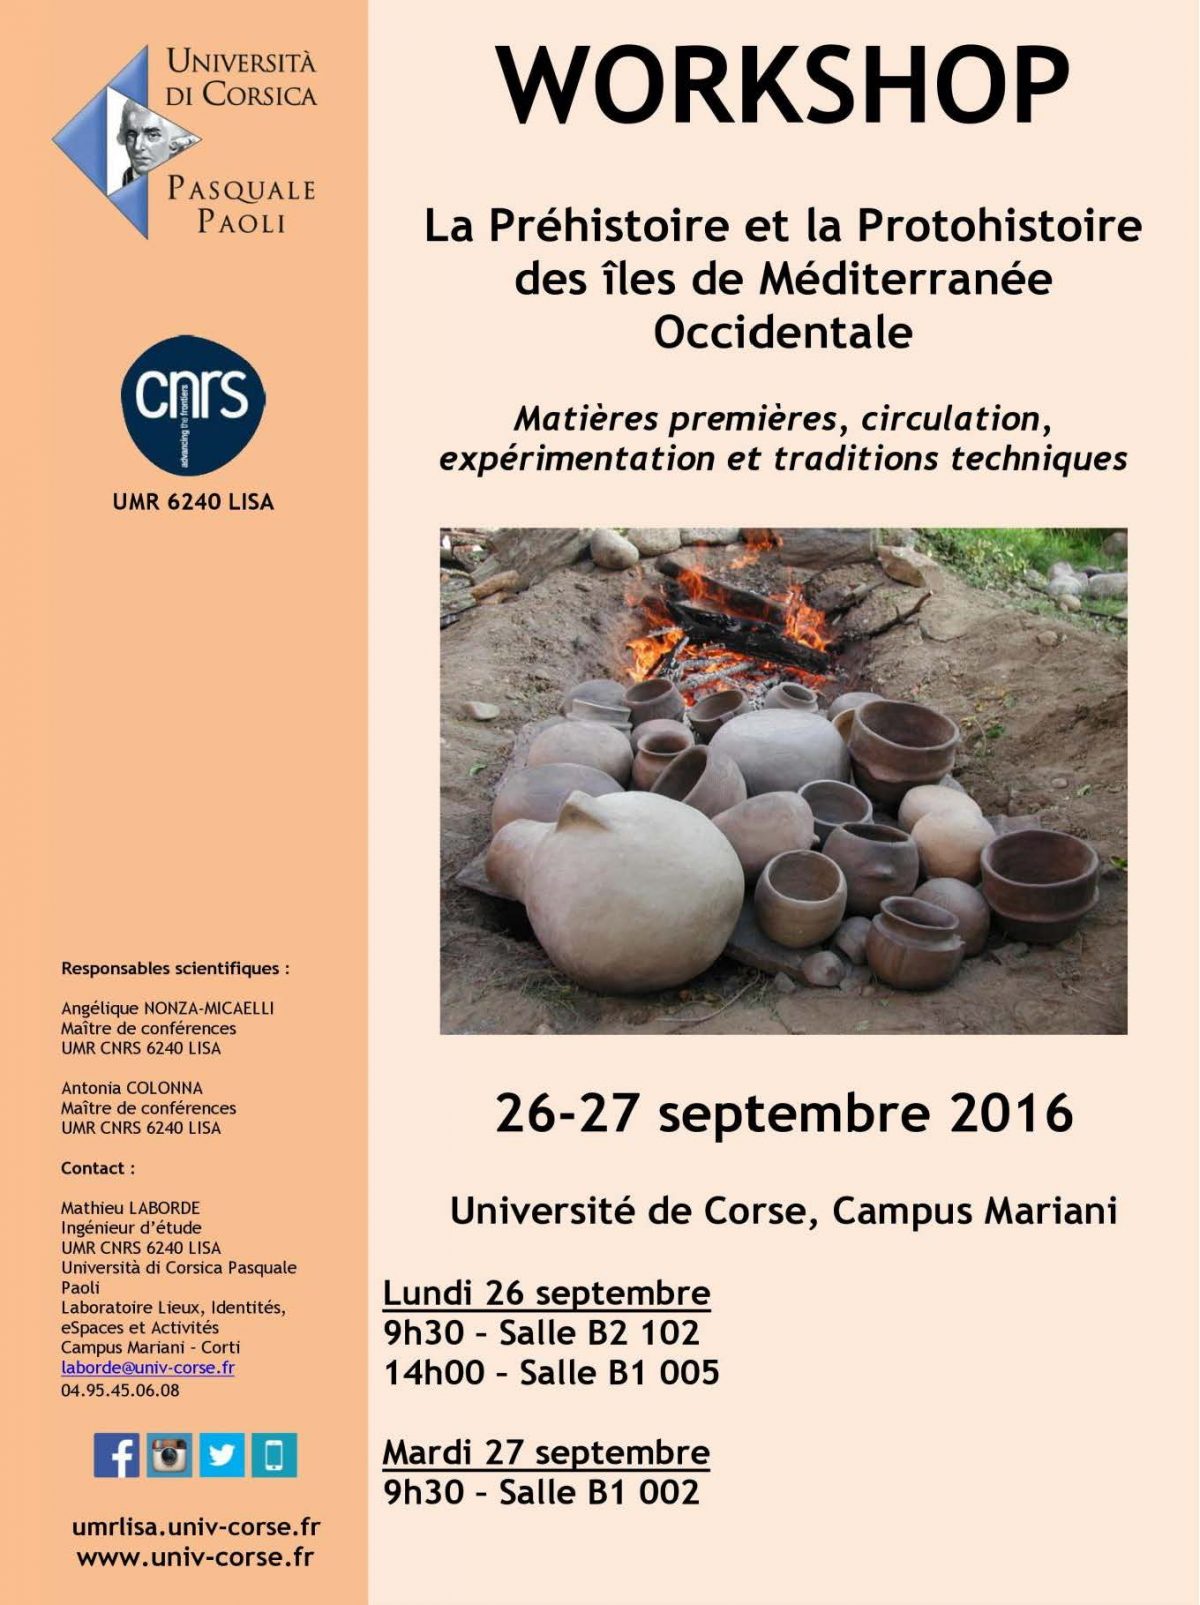 Workshop « La préhistoire et la protohistoire des îles de méditerranée occidentale »